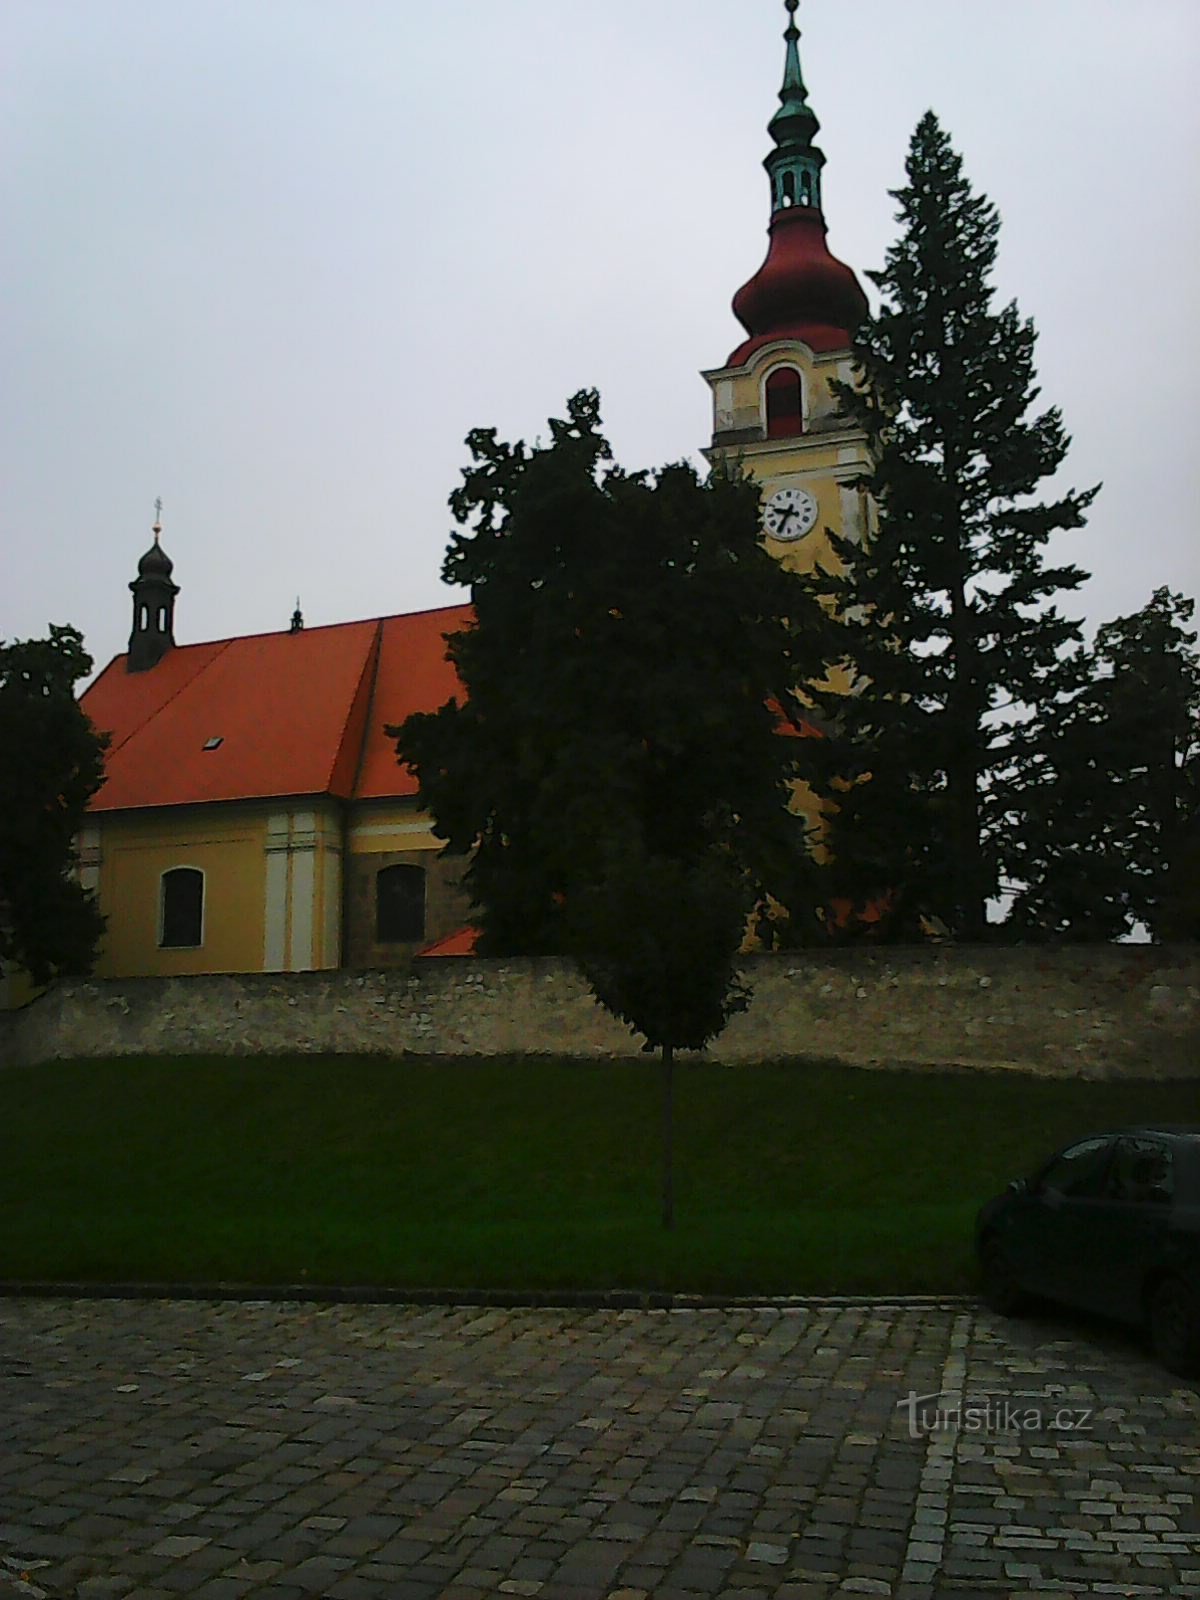 Свято-Вацлавская церковь (Вид с улицы)